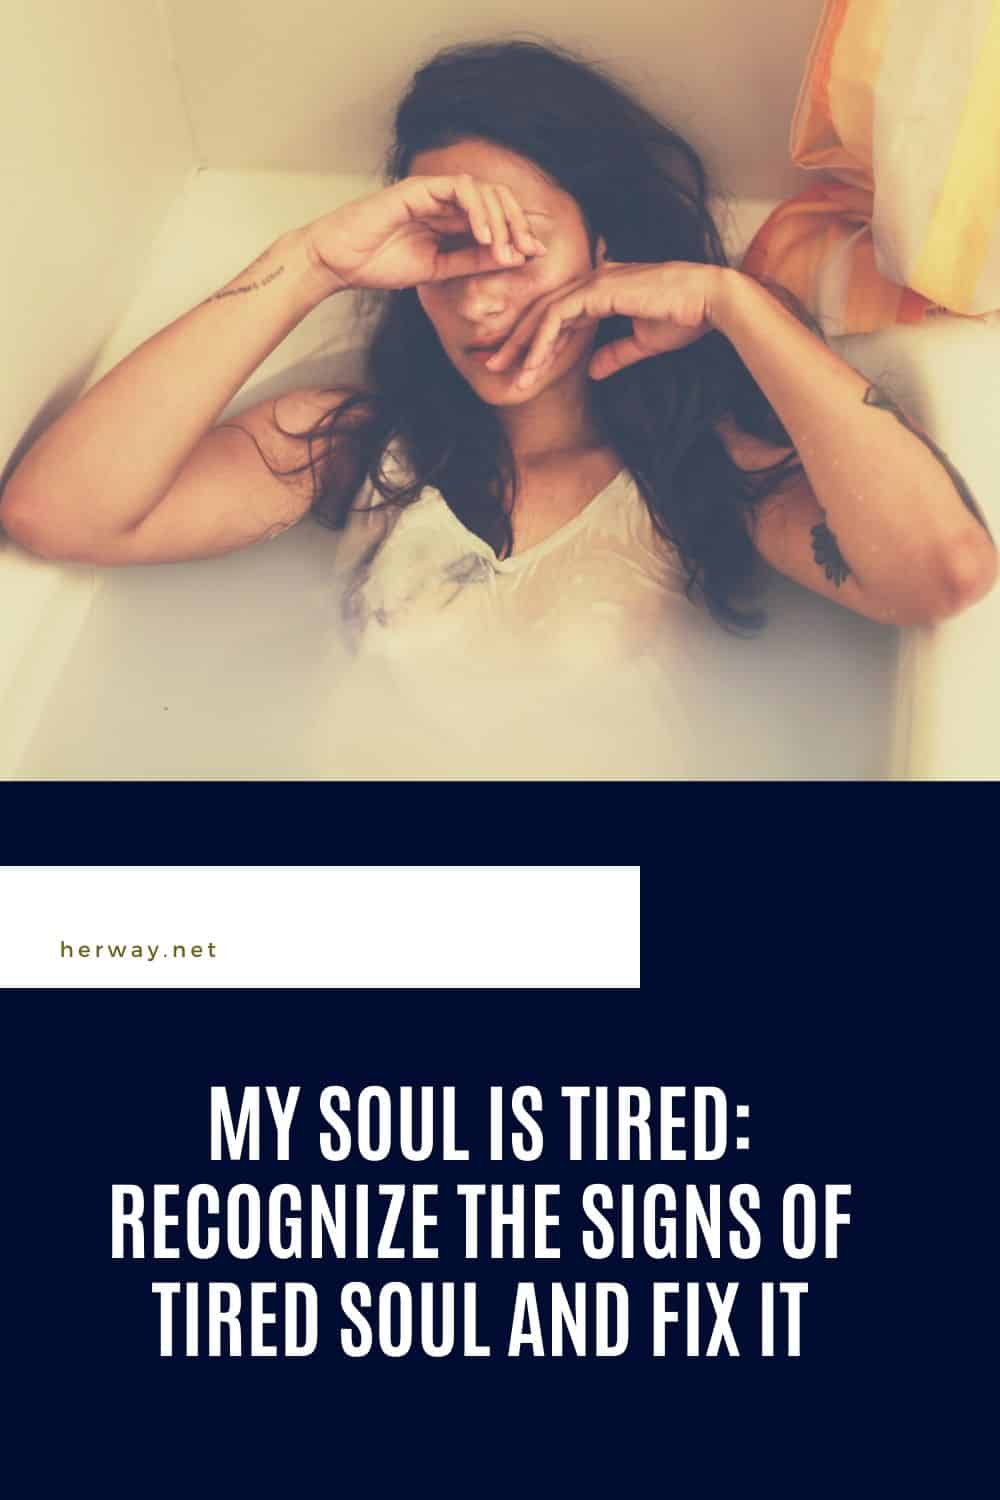 La mia anima è stanca: Riconoscere i segni di stanchezza dell'anima e risolverli